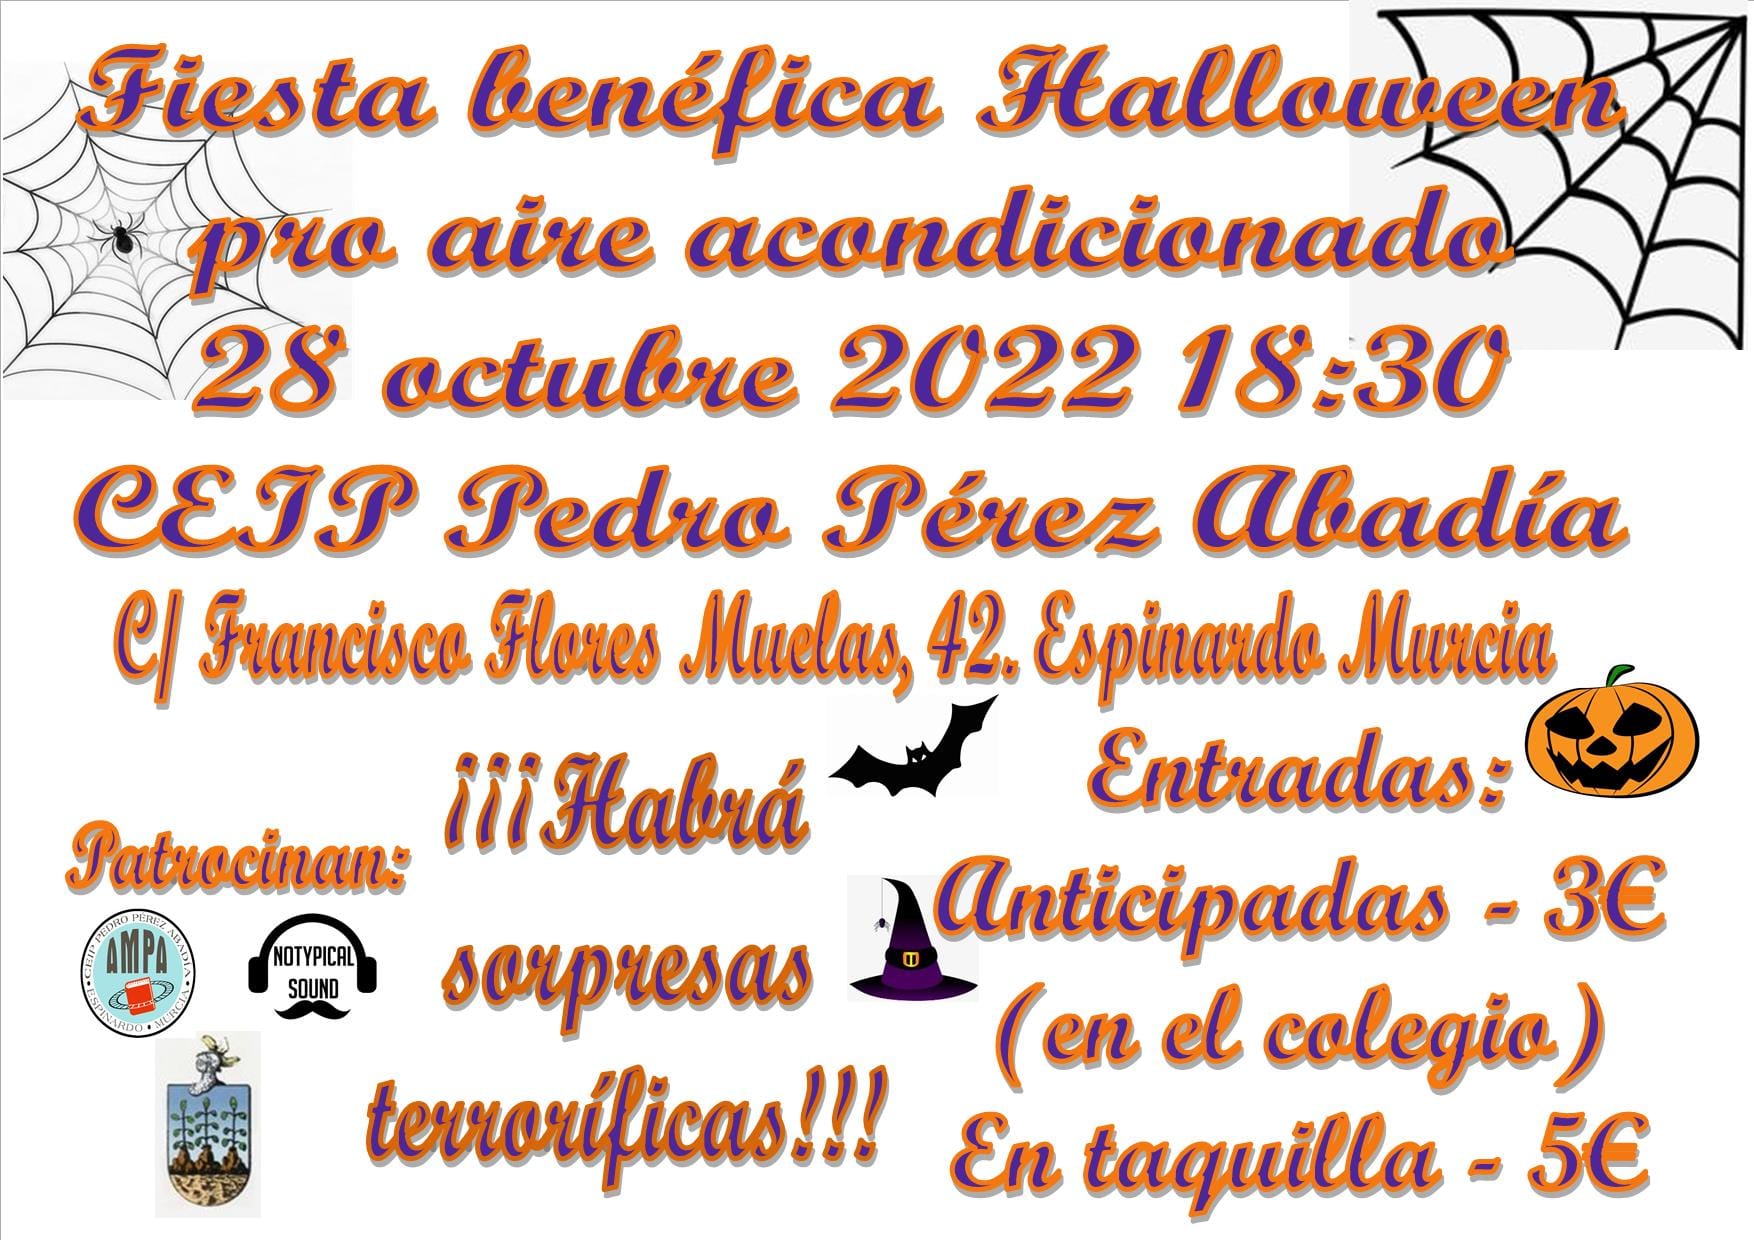 2022-10-28 Fiesta benéfica Halloween en CEIP Pedro Pérez Abadía